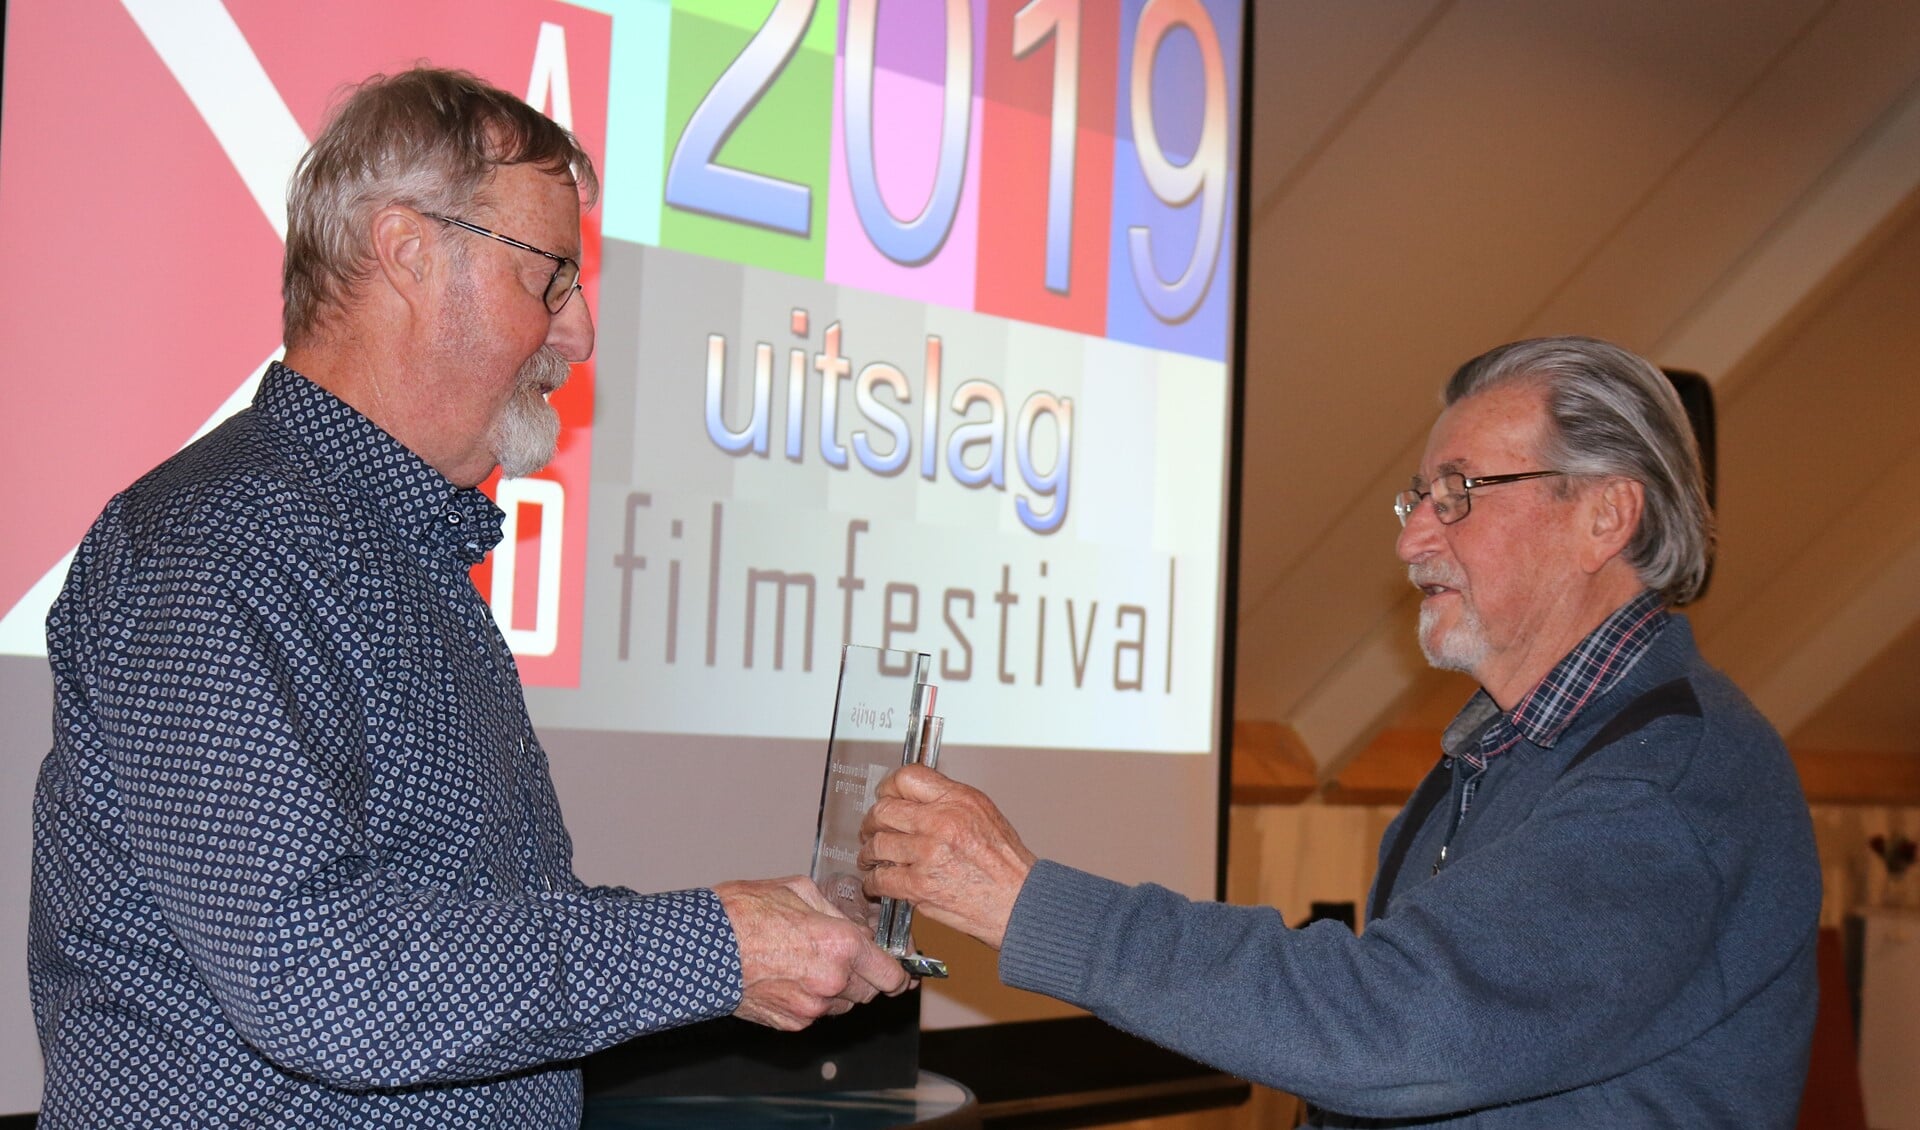 Voorzitter AVO Ruud Calis en filmer Hans Scherjon tijdens het regio AVO filmfestival. Foto: Tonny Jansen